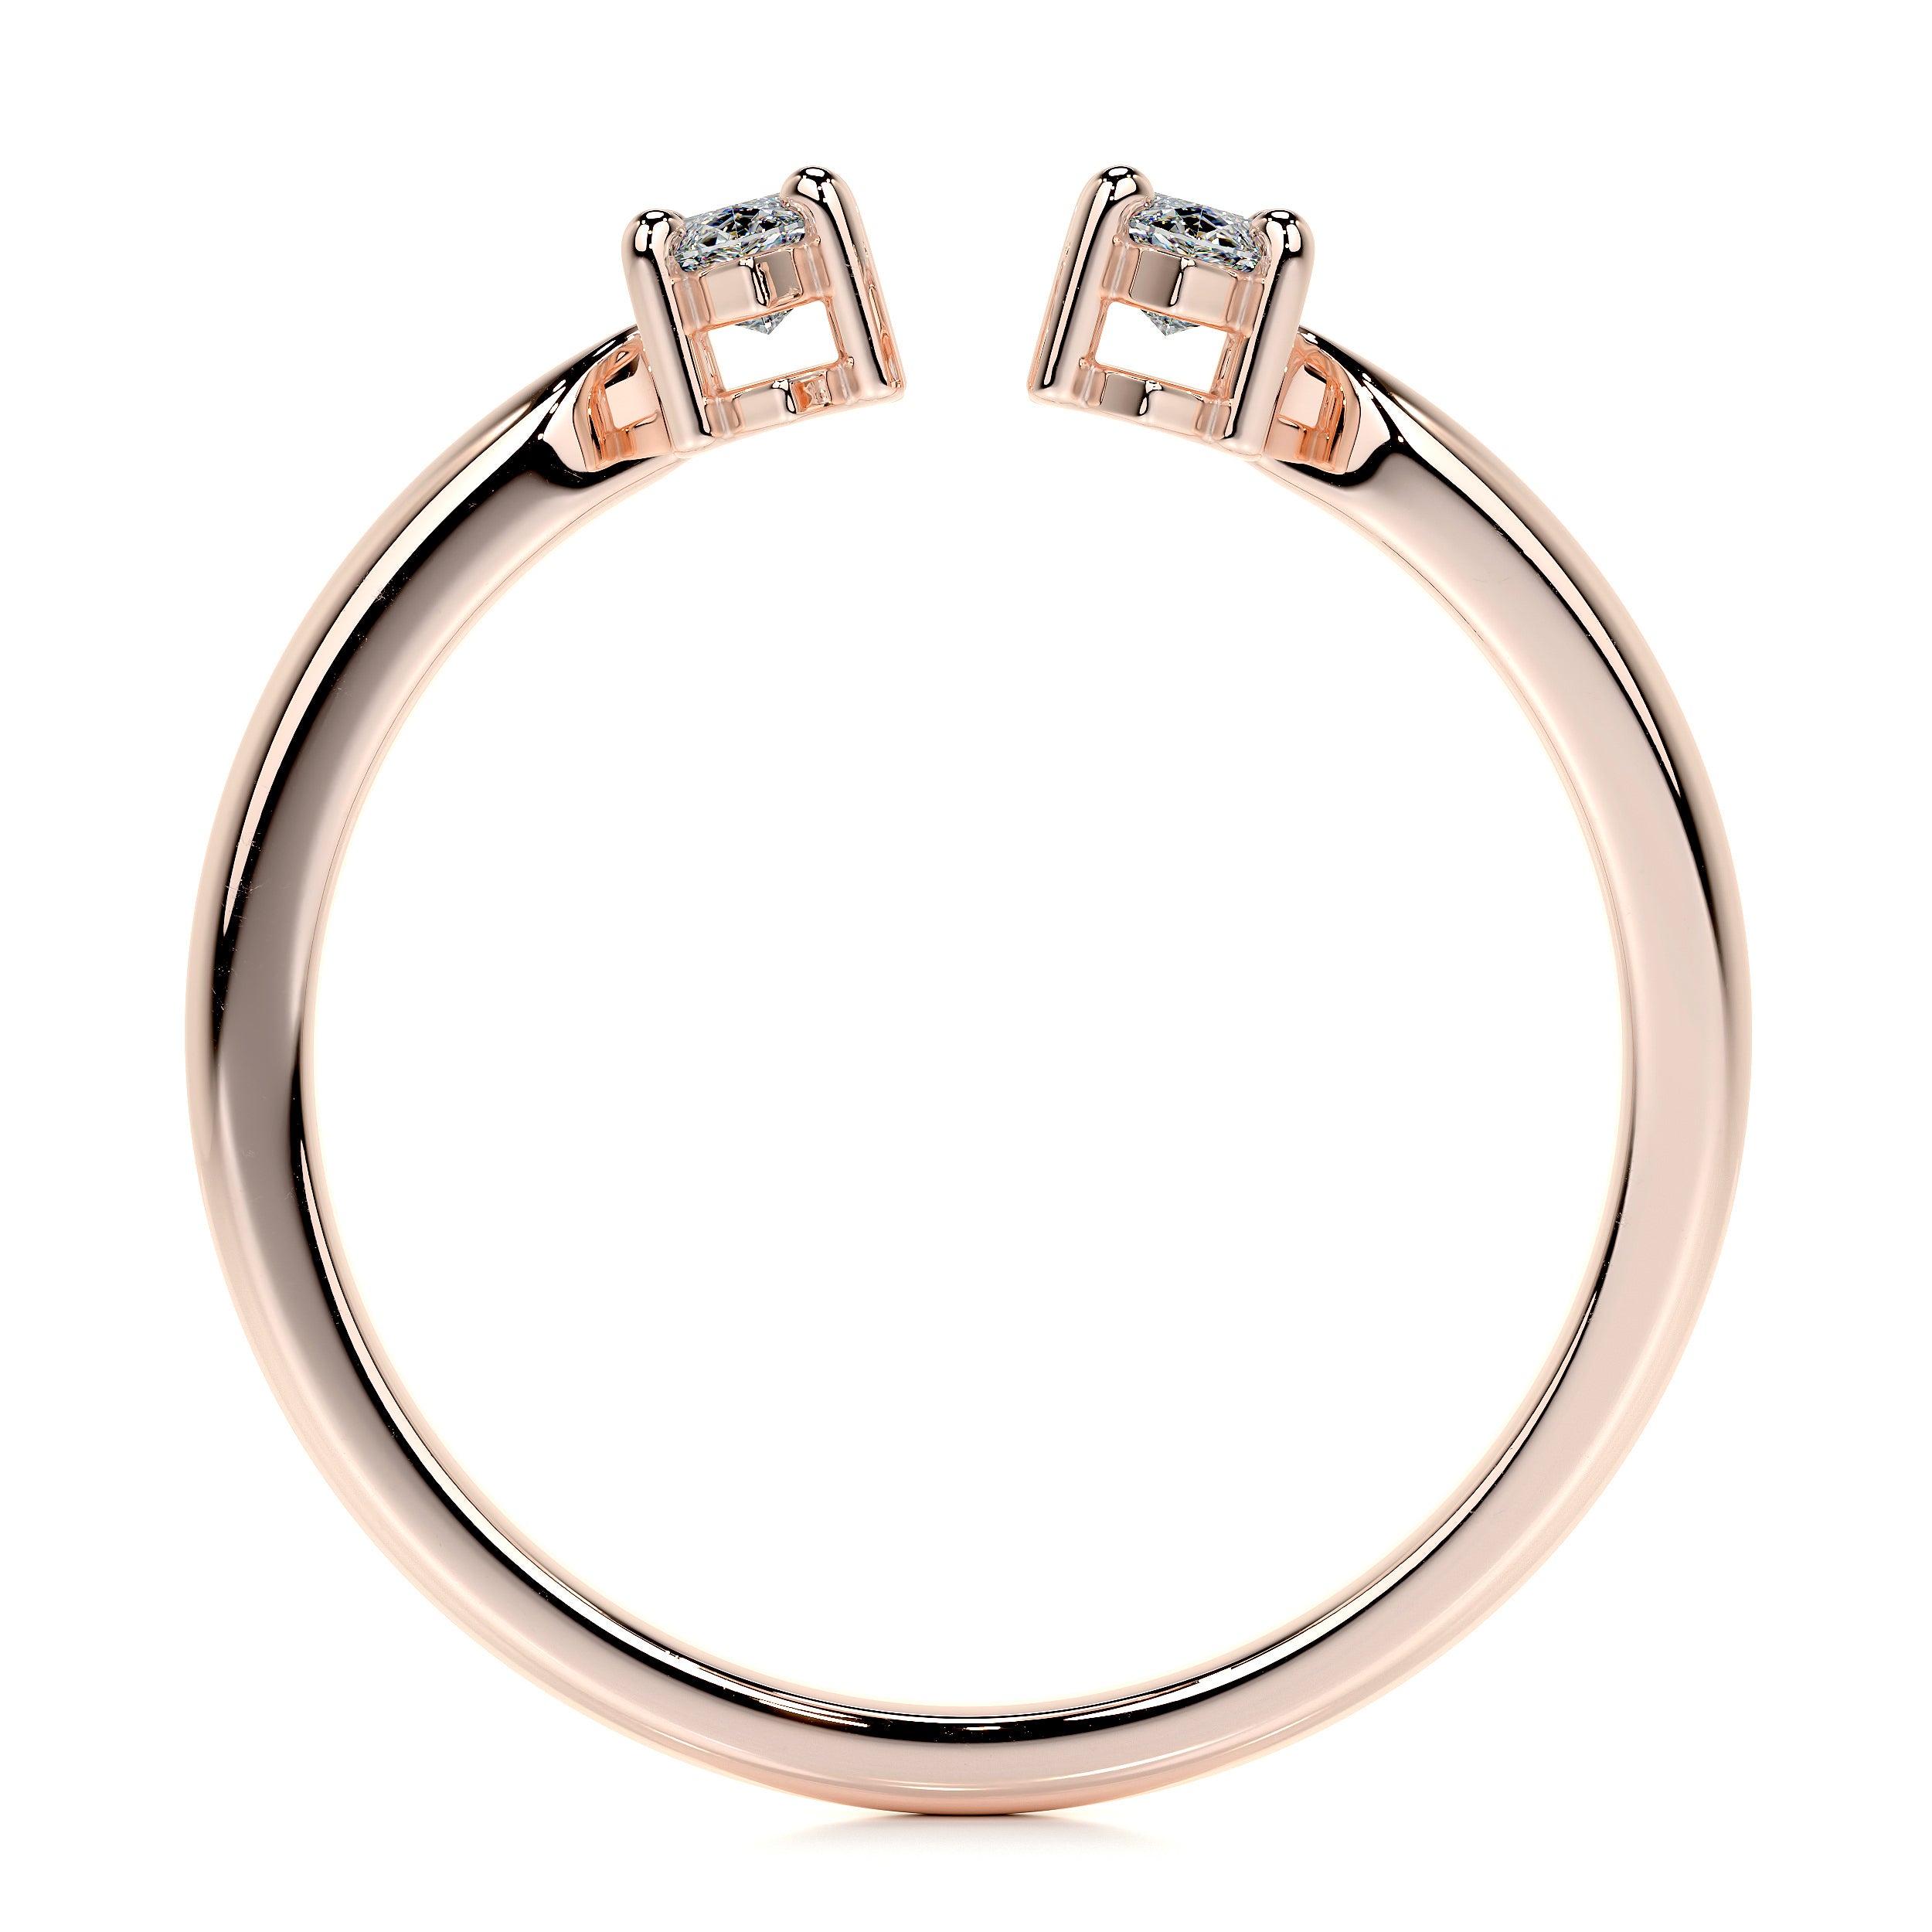 Celine Lab Grown Fashion Ring   (0.36 Carat) -14K Rose Gold